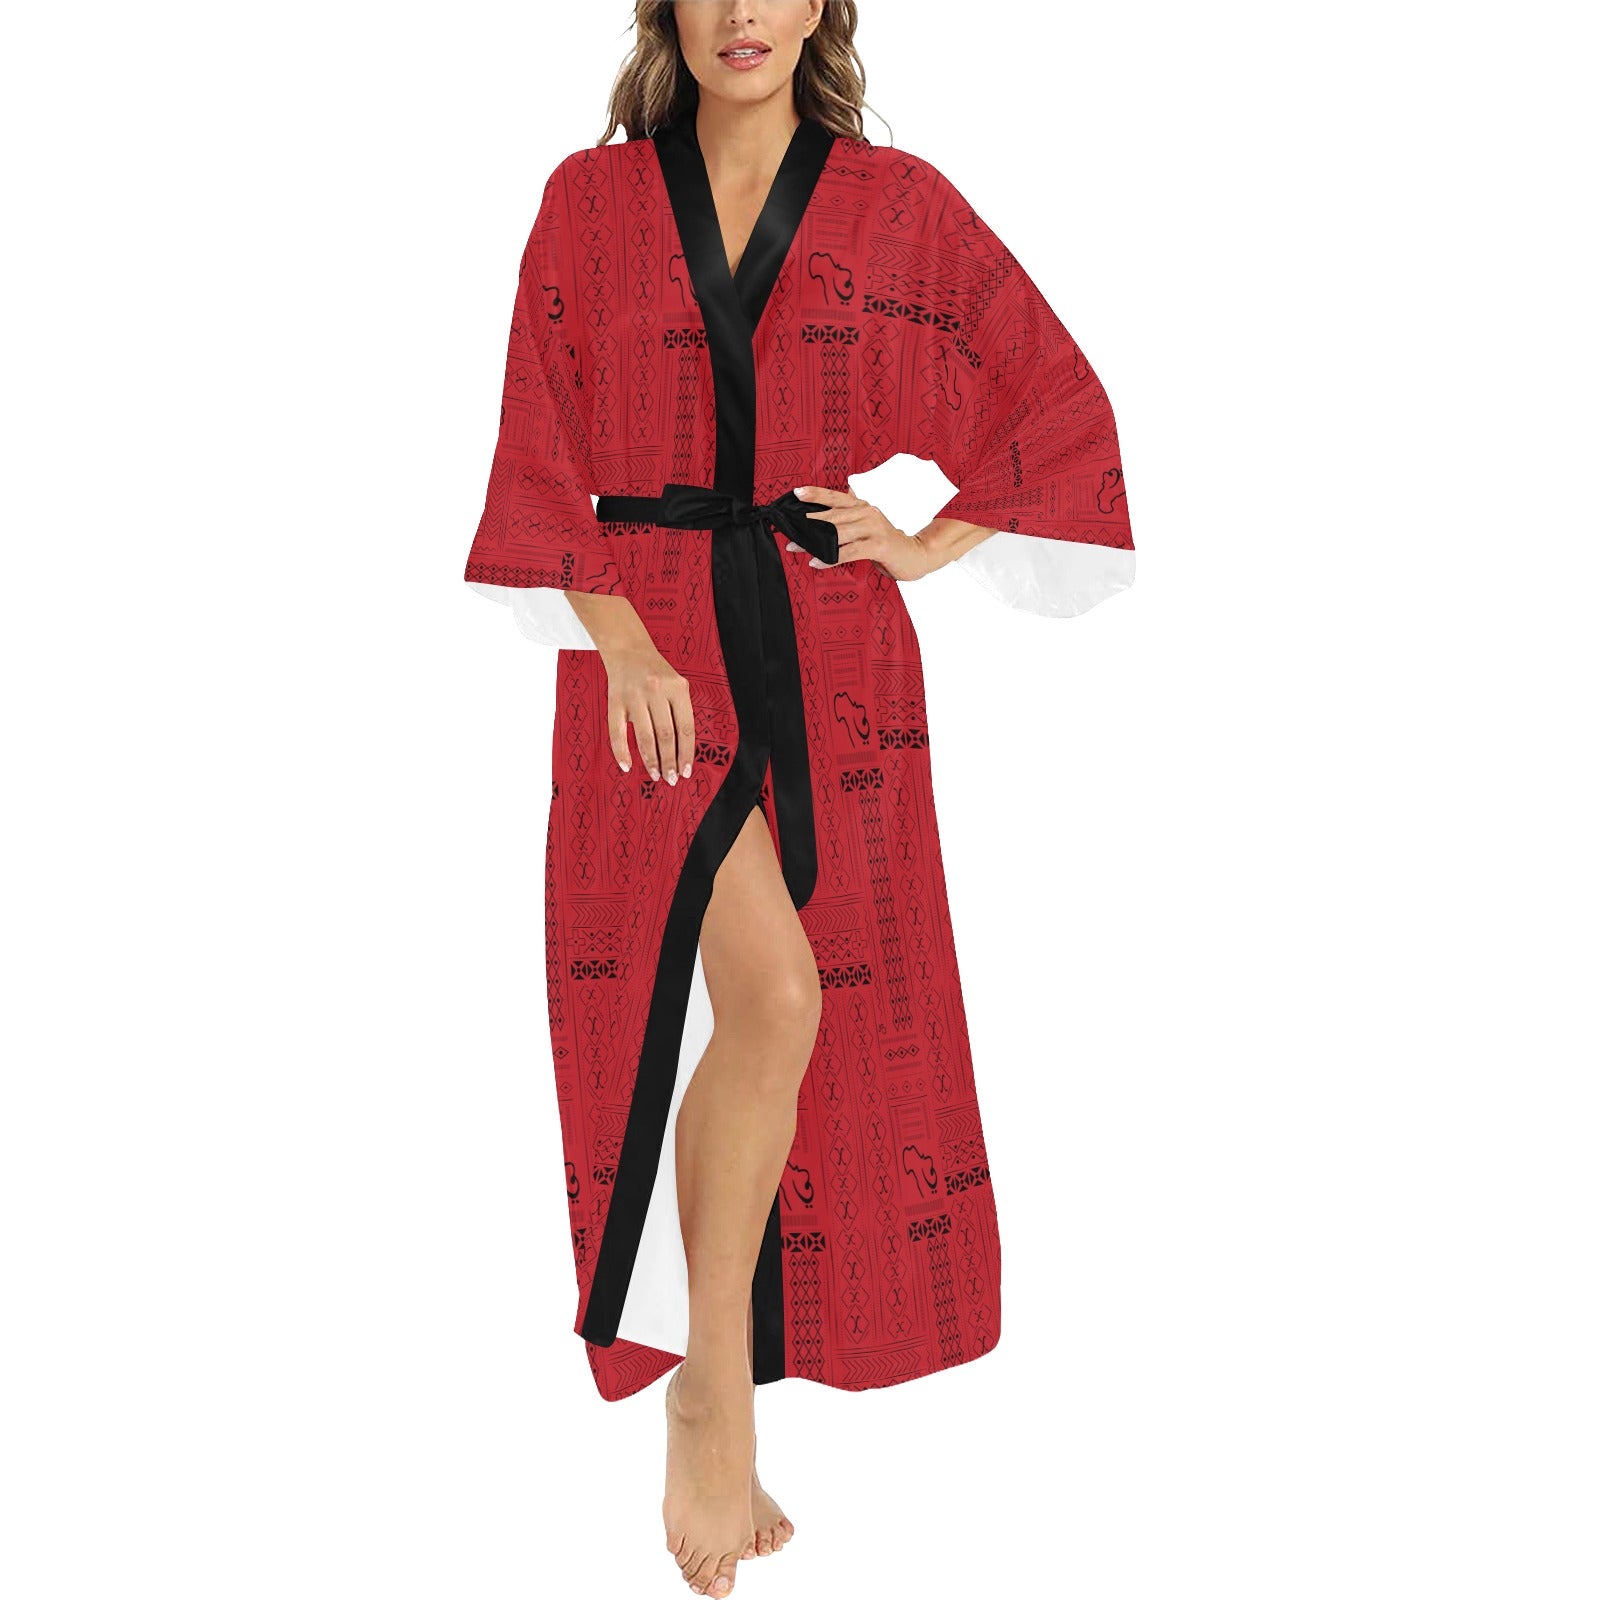 AfriBix Collage Long Kimono Cover up Women's Robe – Afribix